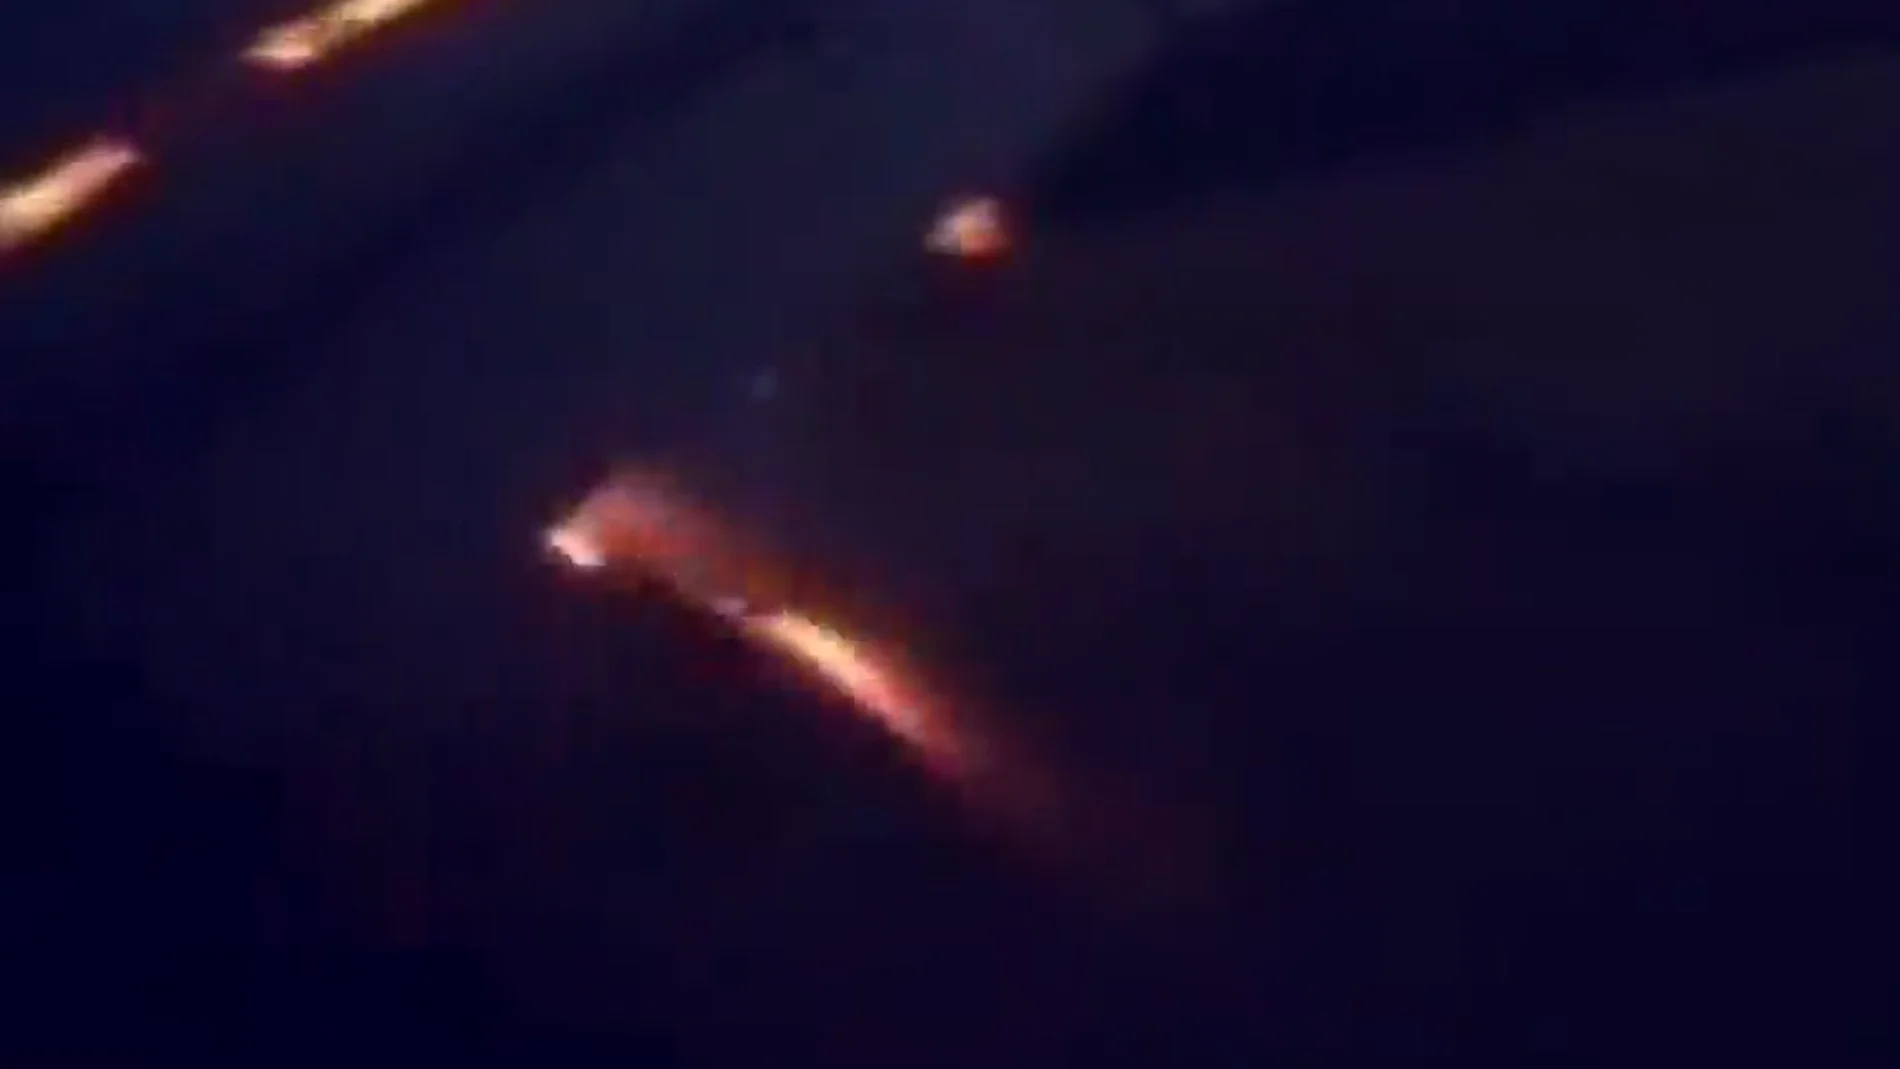 Uno de los motores del avión de Arabia Saudí, en llamas en pleno aterrizaje